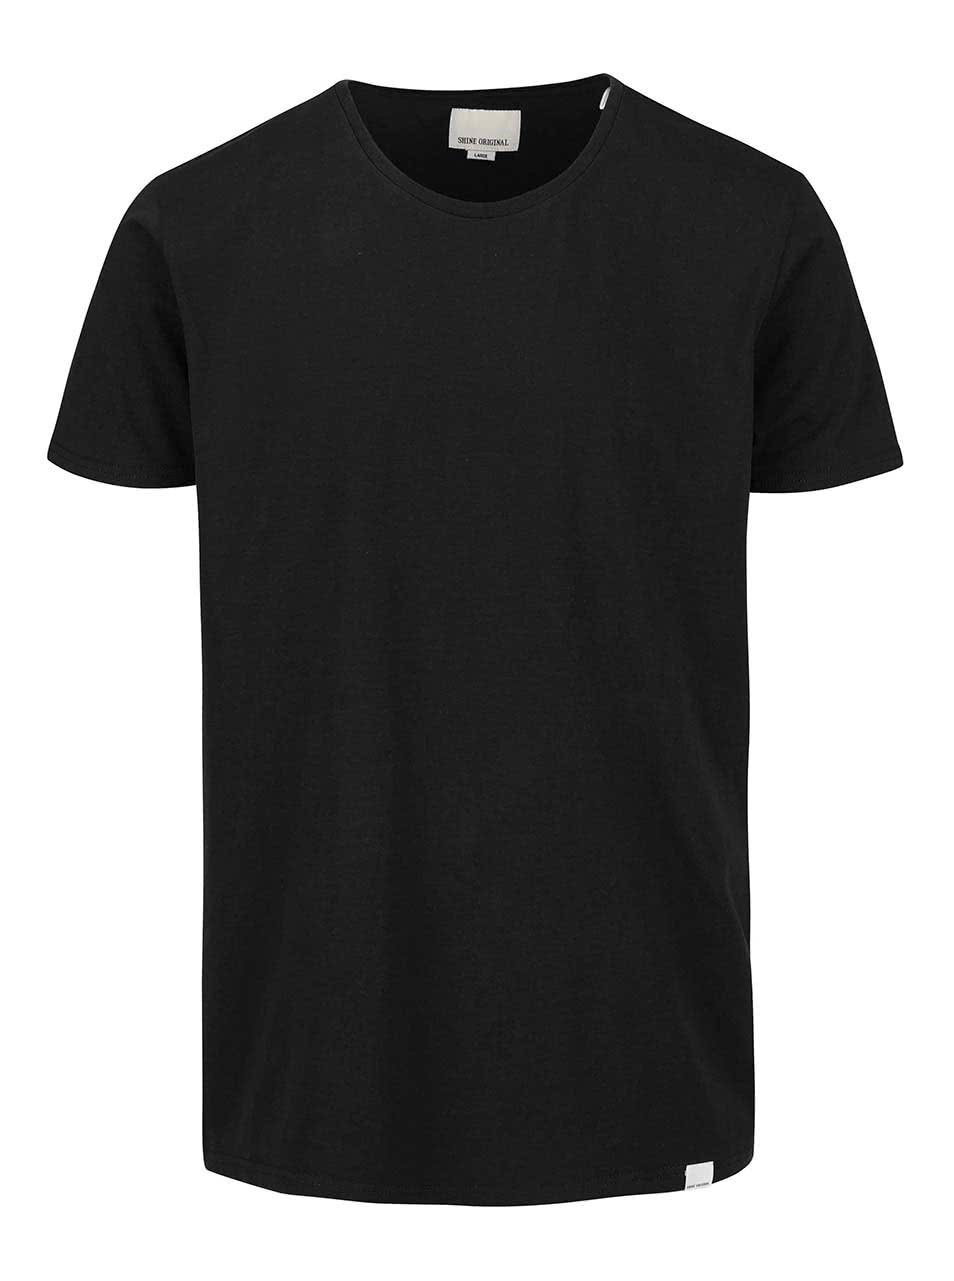 Černé triko s kulatým výstřihem Shine Original